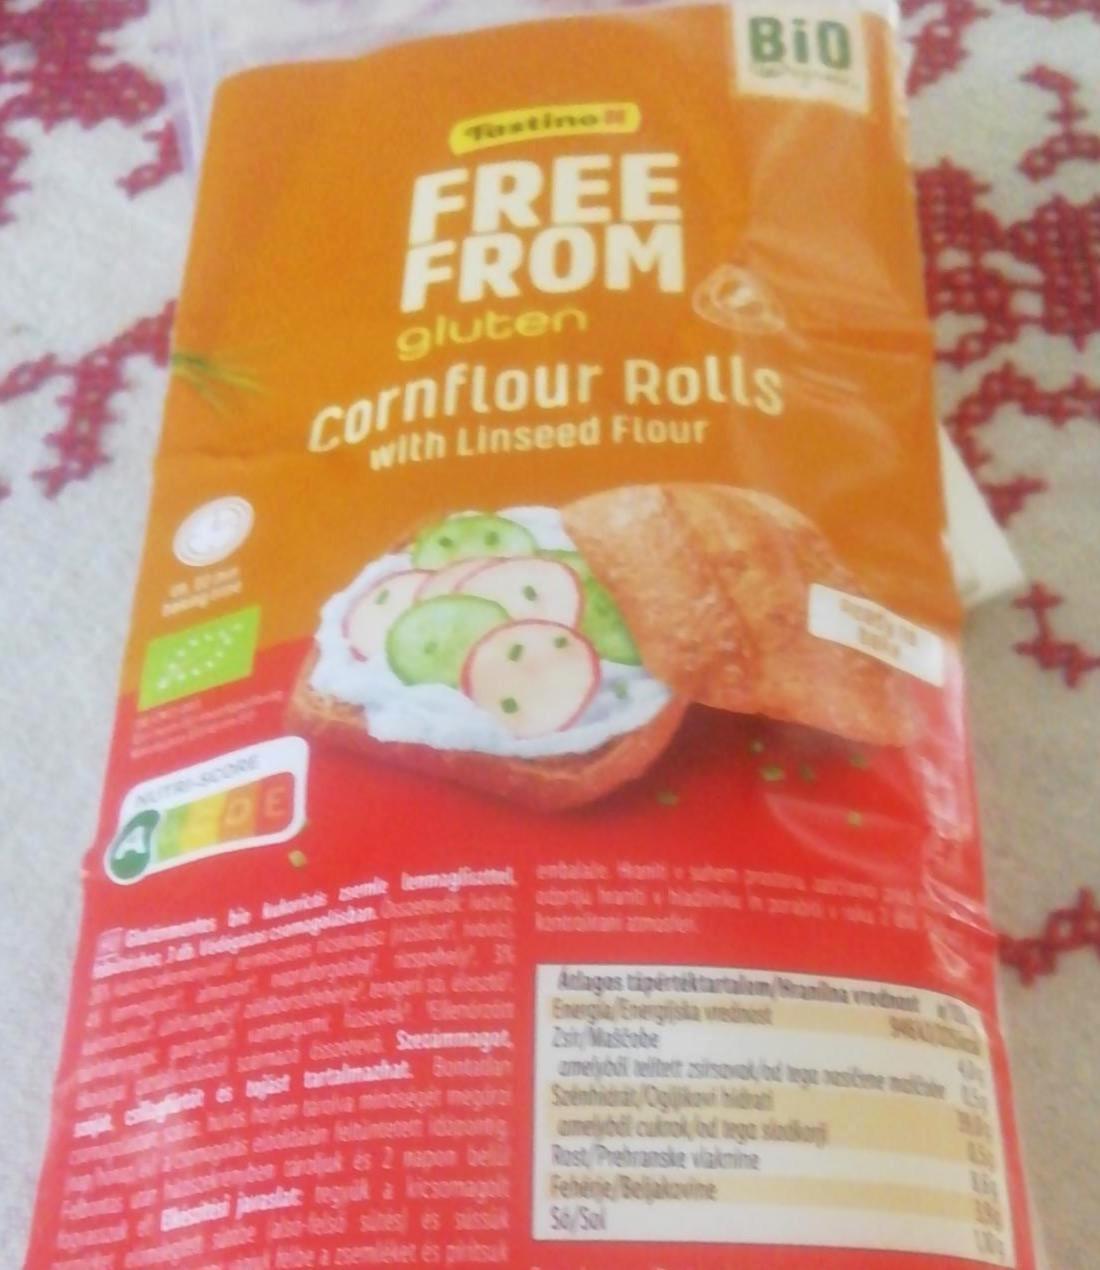 Képek - Cornflour rolls free from gluten Tastino